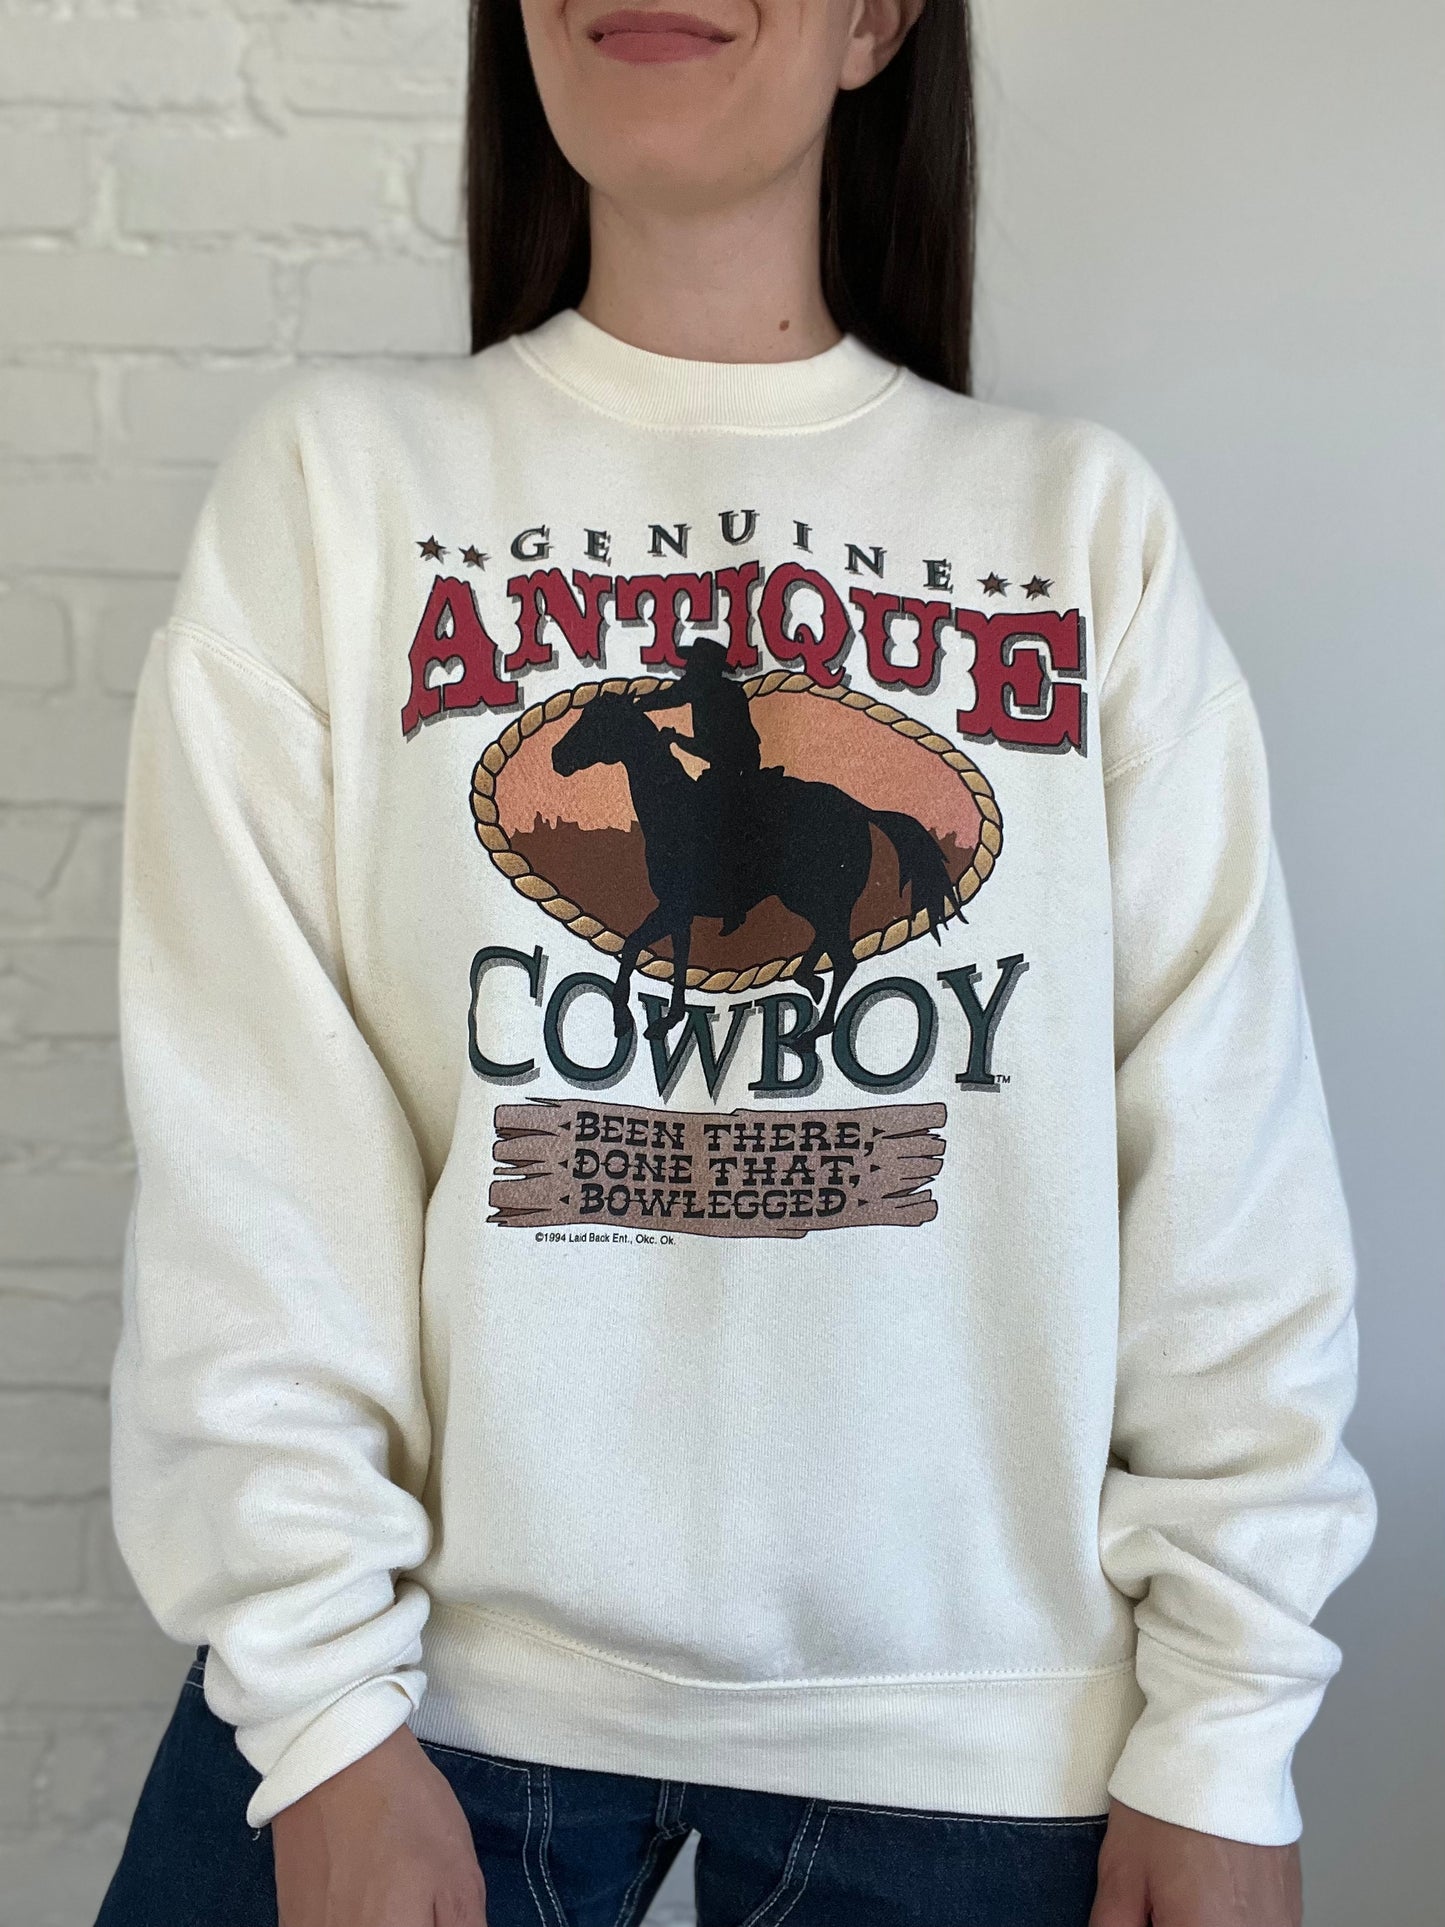 Antique Cowboy Sweater - Size L/XL